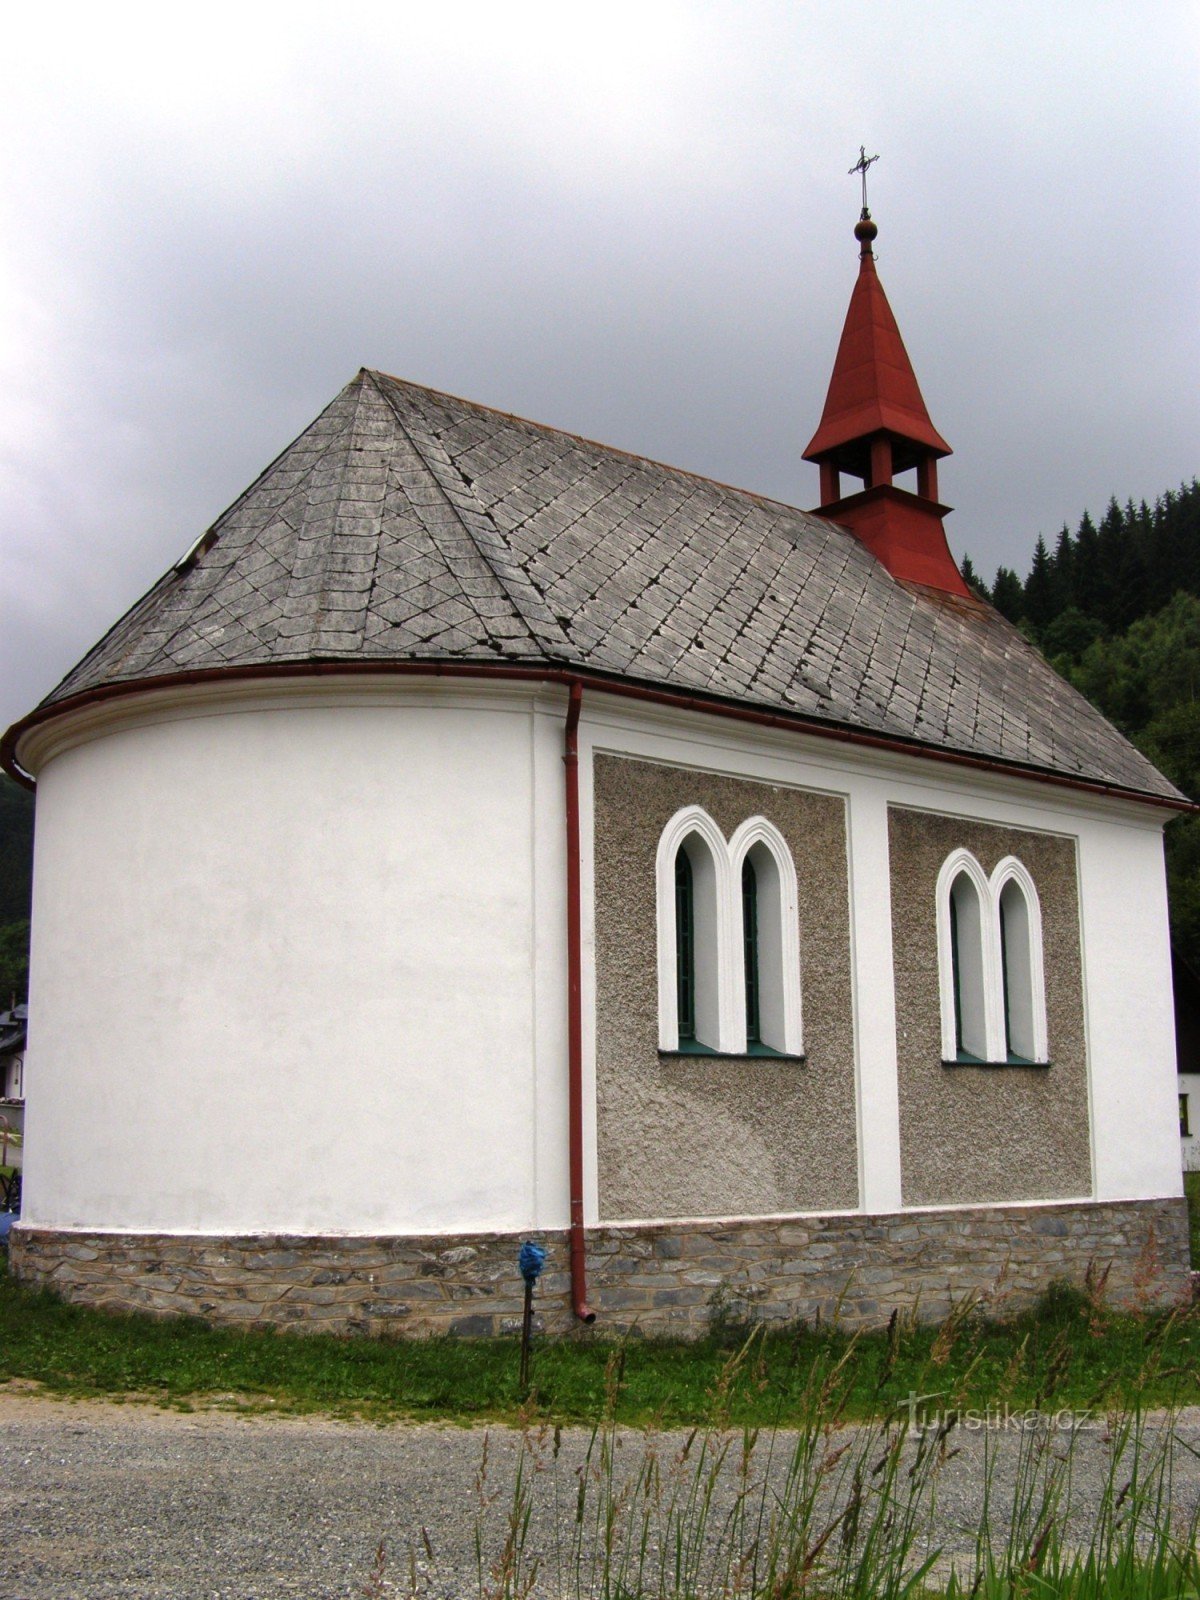 Petříkov - chapel of St. Lawrence